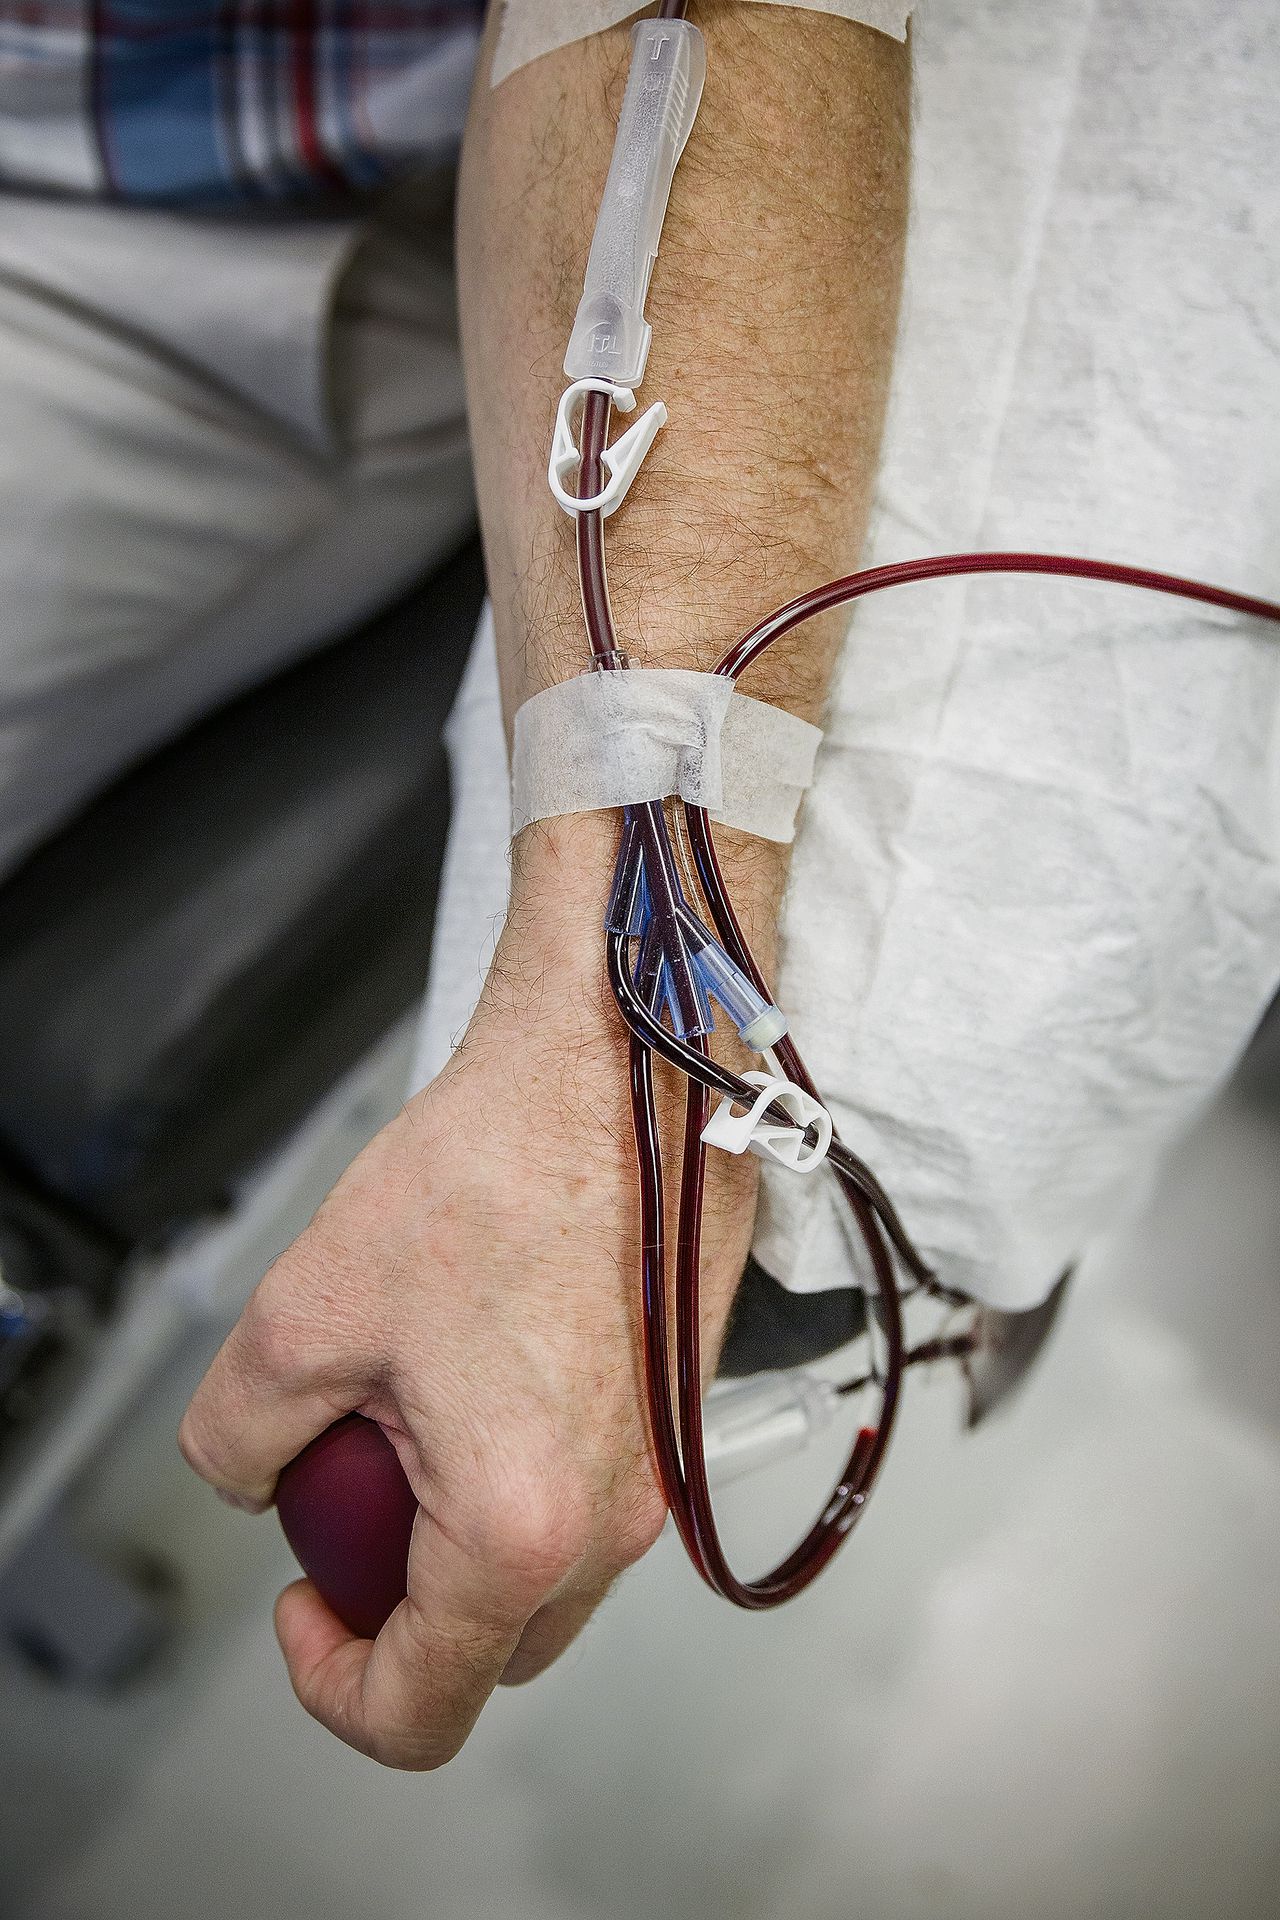 Bloed wordt afgetapt bij donoren.